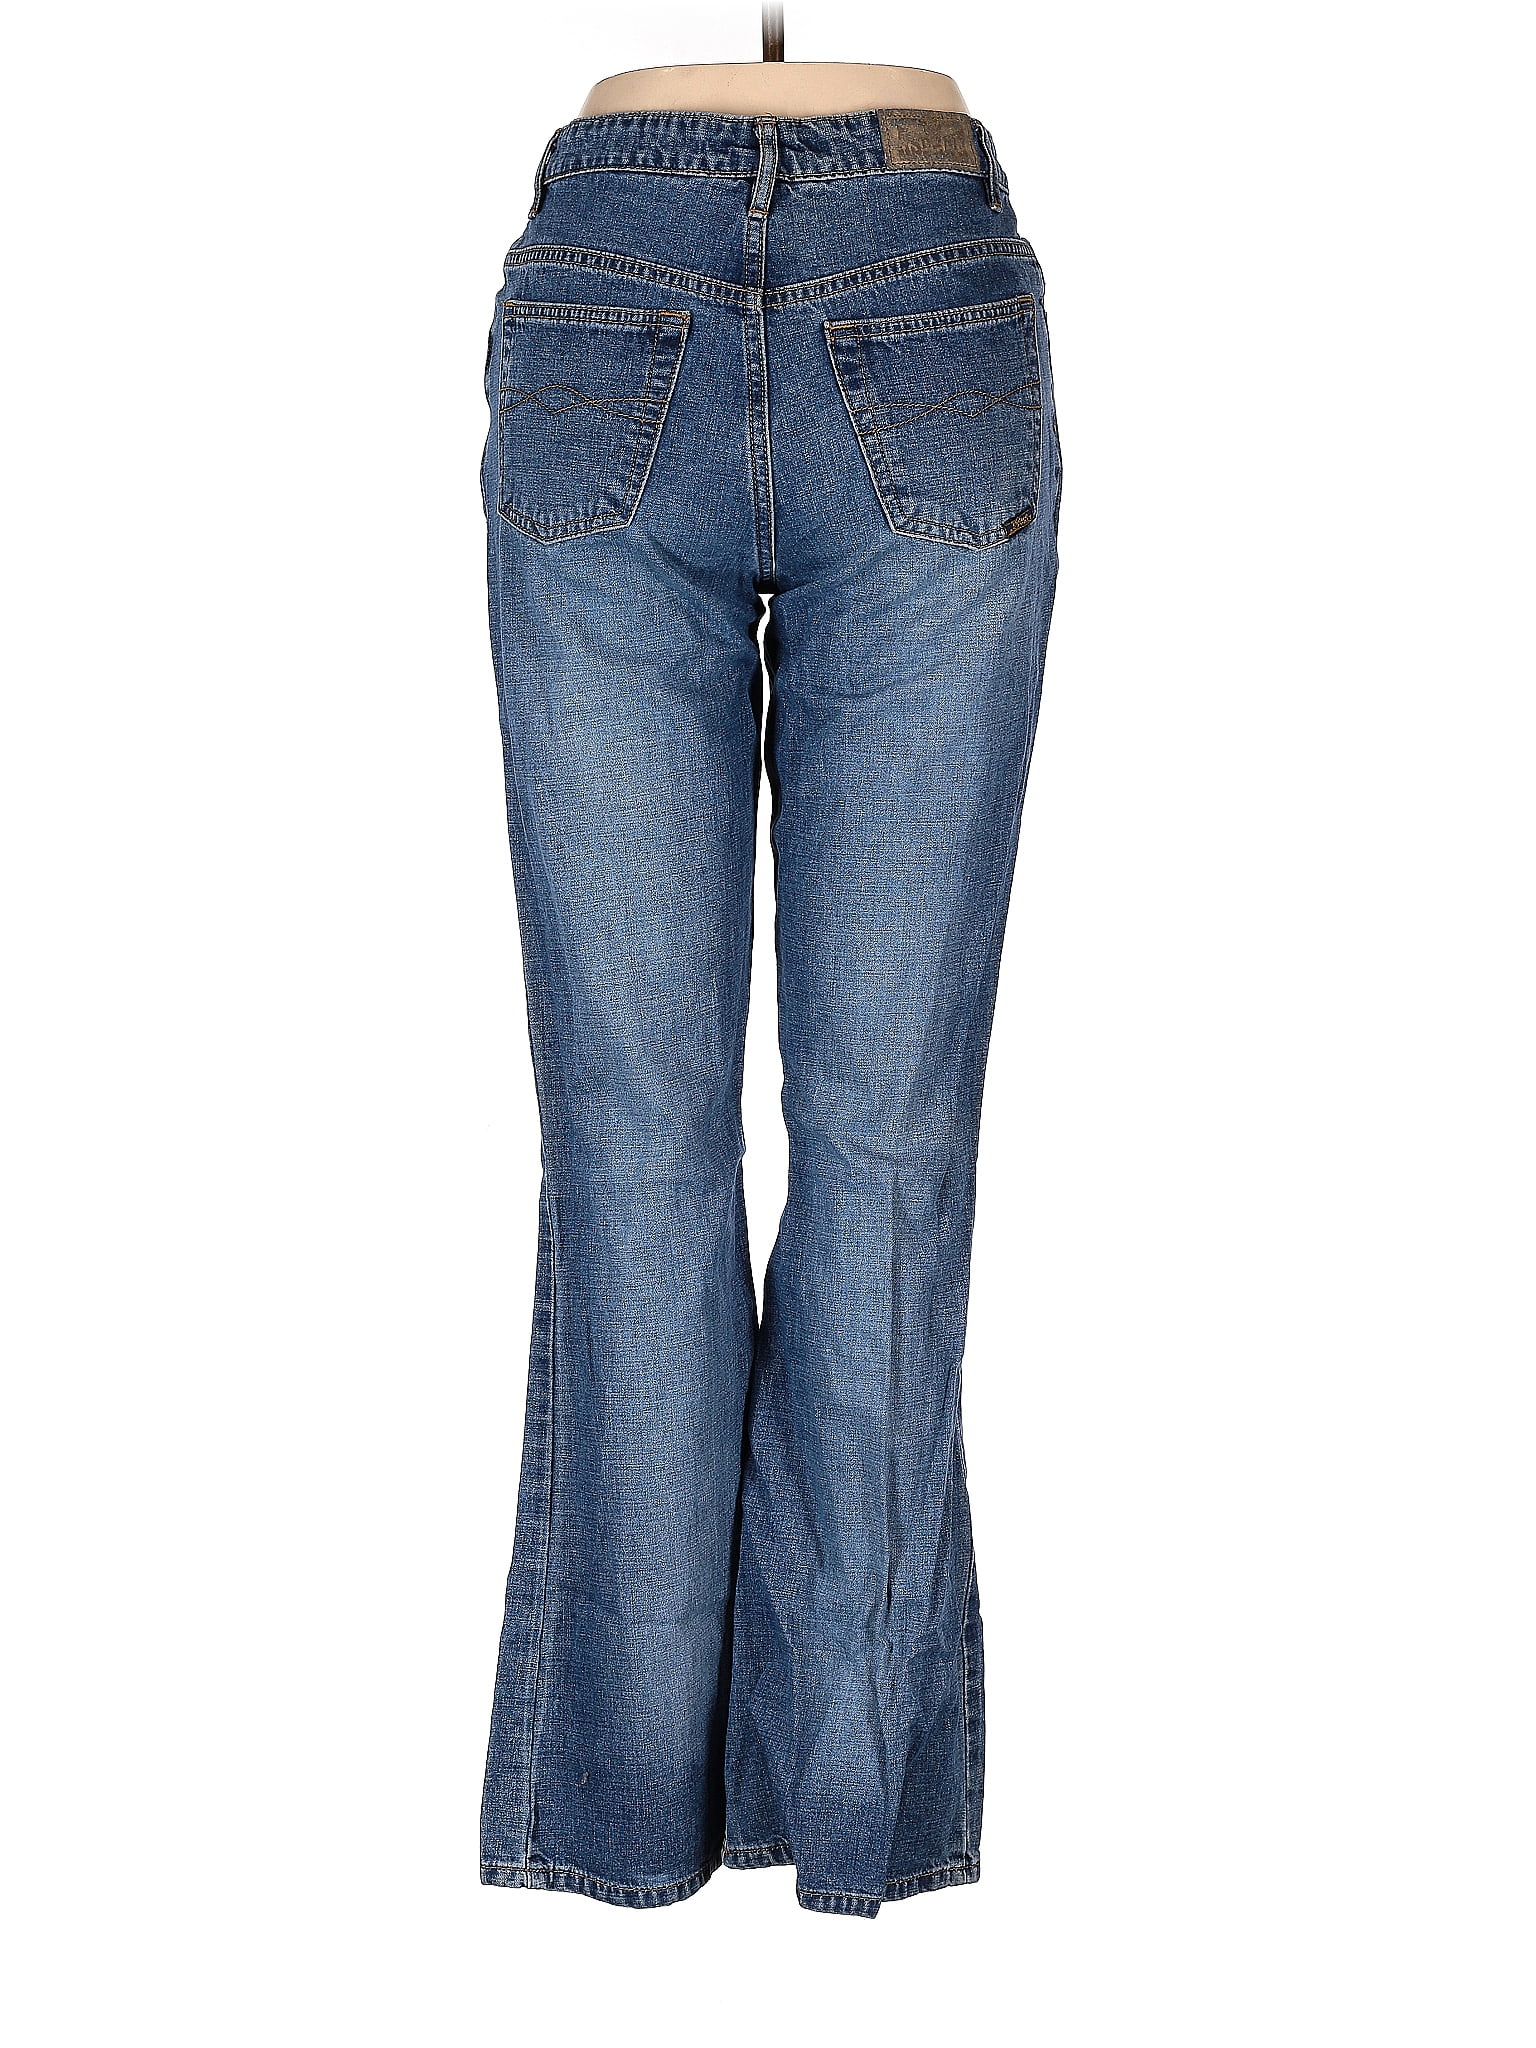 Blue Asphalt 100% Cotton Solid Blue Jeans Size 7 - 64% off